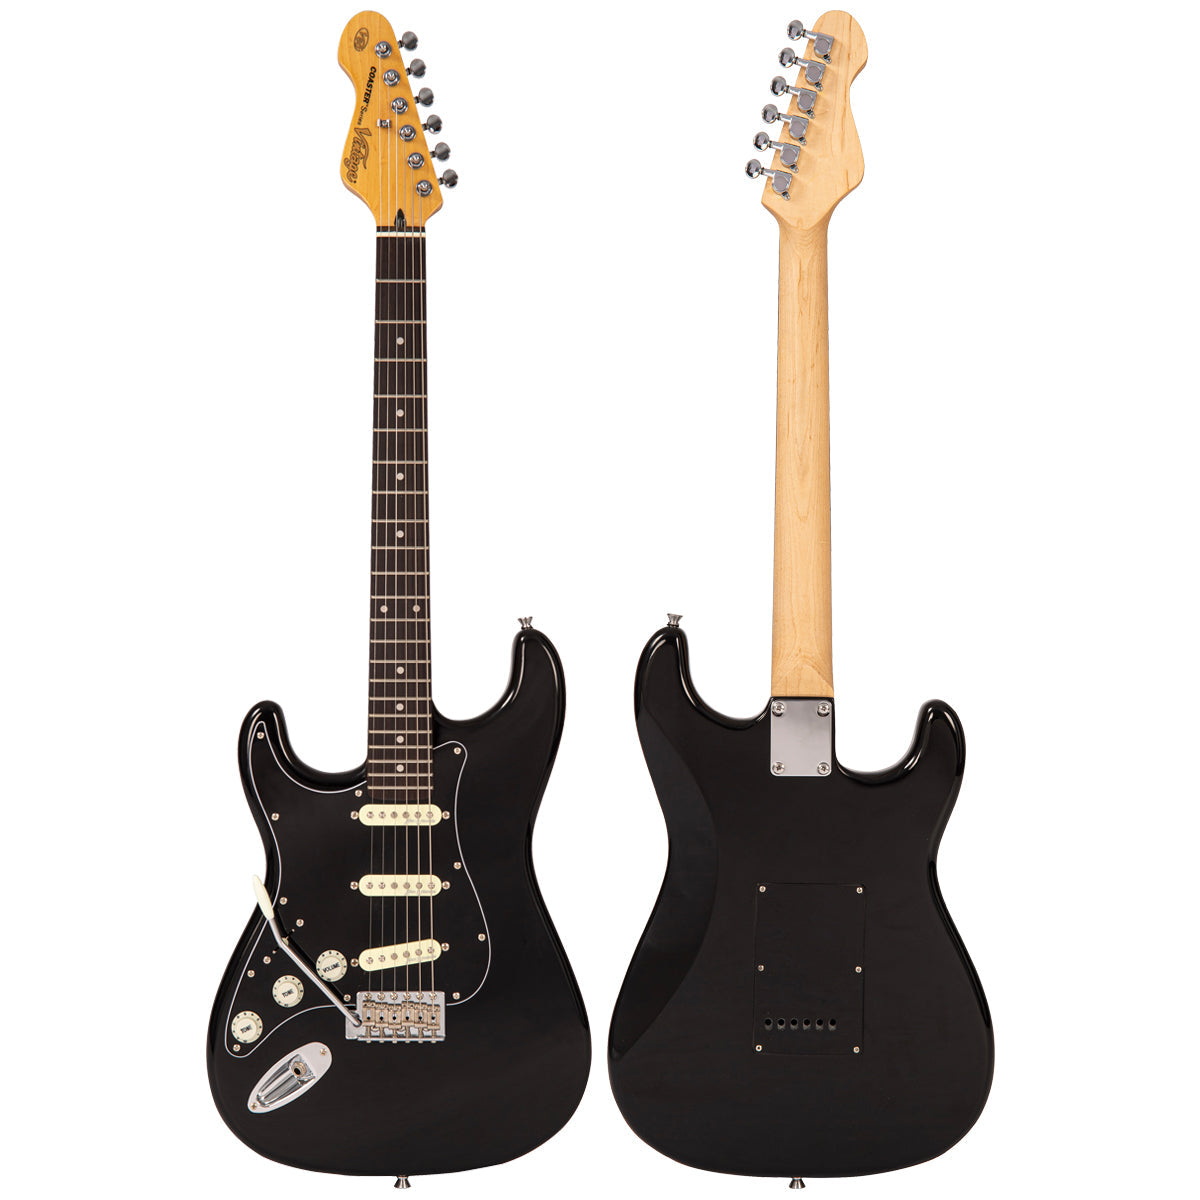 Vintage V60 Coaster Series Electric Guitar Pack ~ Left Hand Boulevard Black, Left Hand Electric Guitars for sale at Richards Guitars.